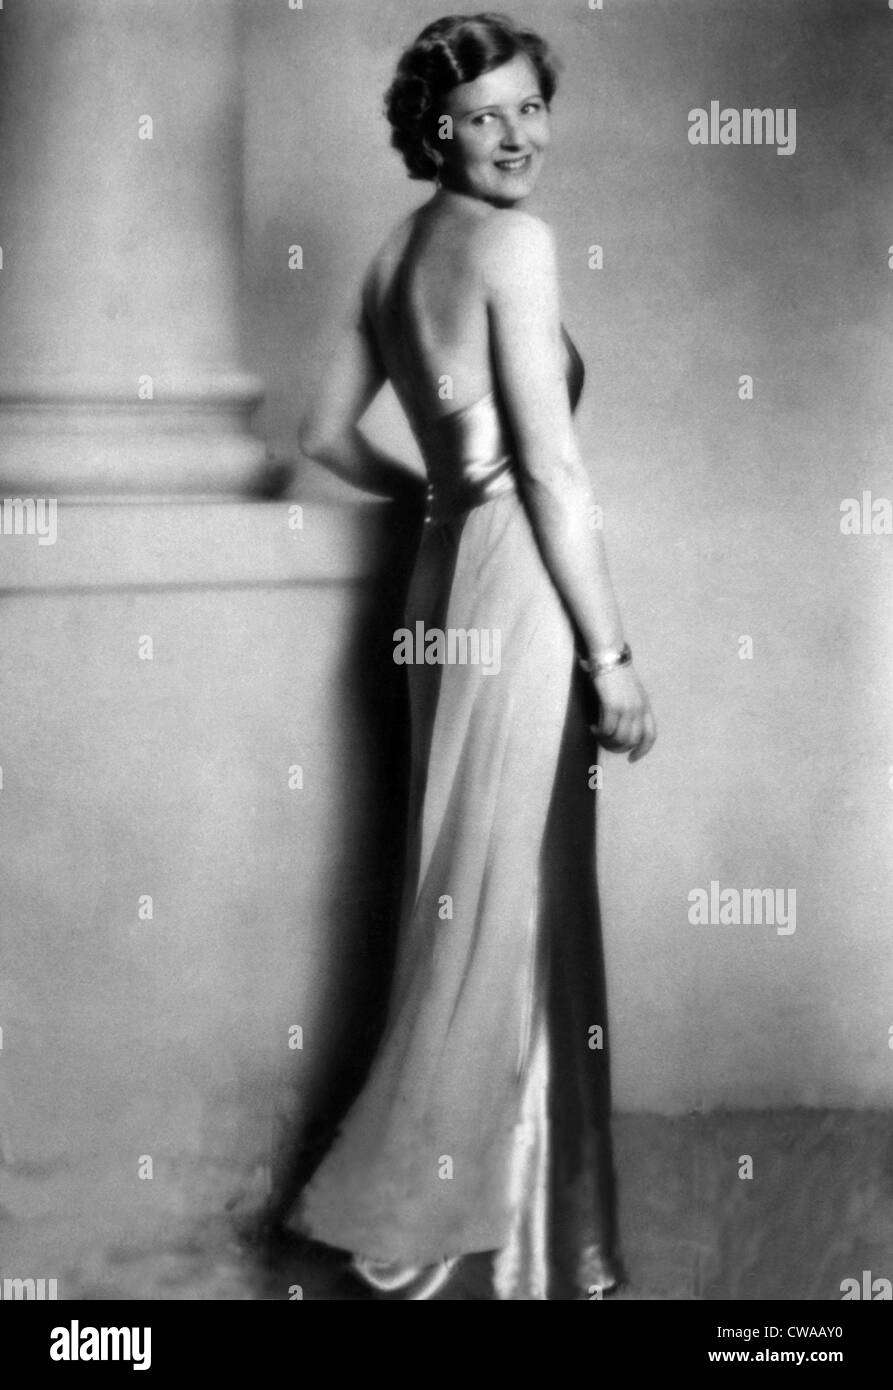 Eva Braun, novia de Adolf Hitler. ca. 1945. Cortesía: CSU Archives/Everett Collection Foto de stock